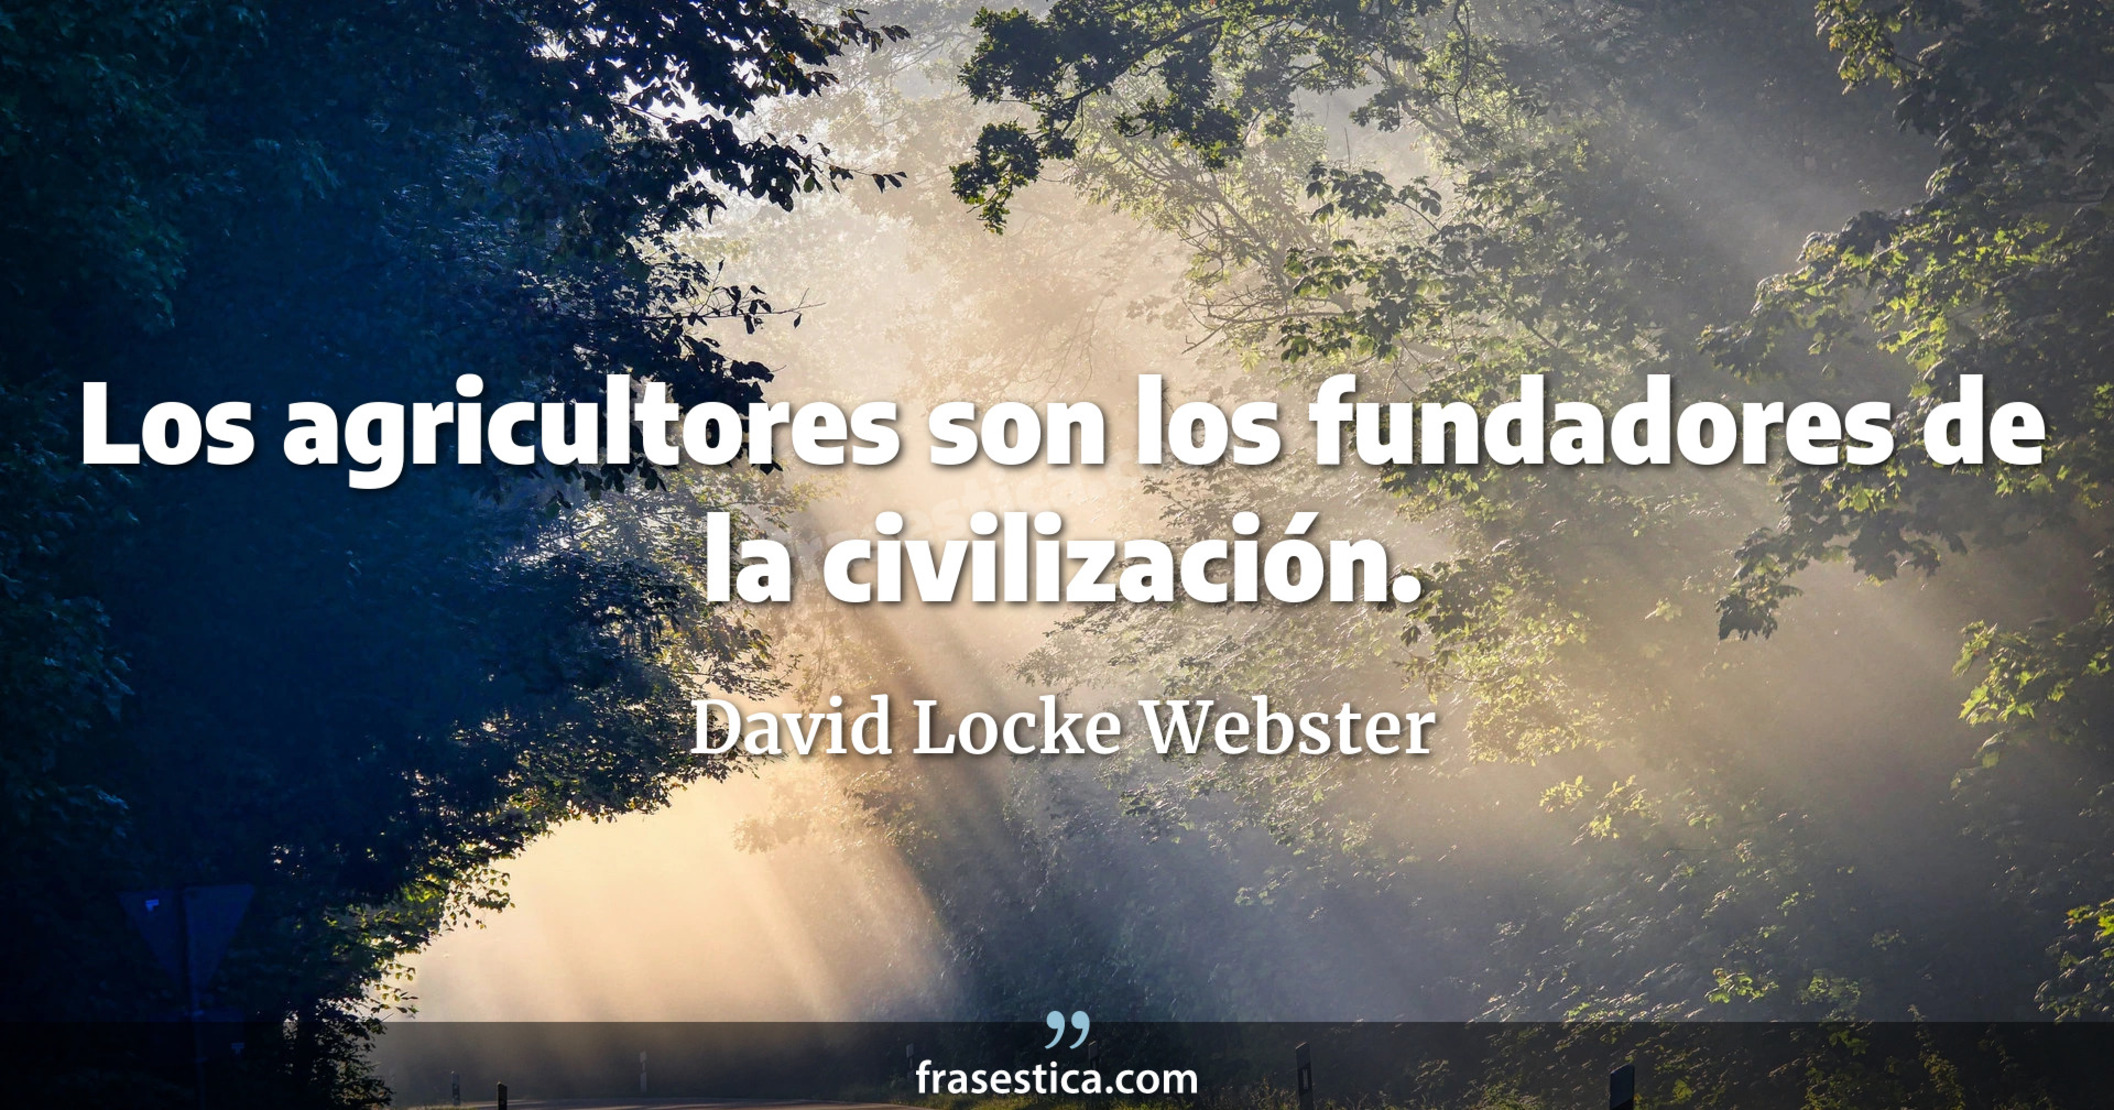 Los agricultores son los fundadores de la civilización. - David Locke Webster